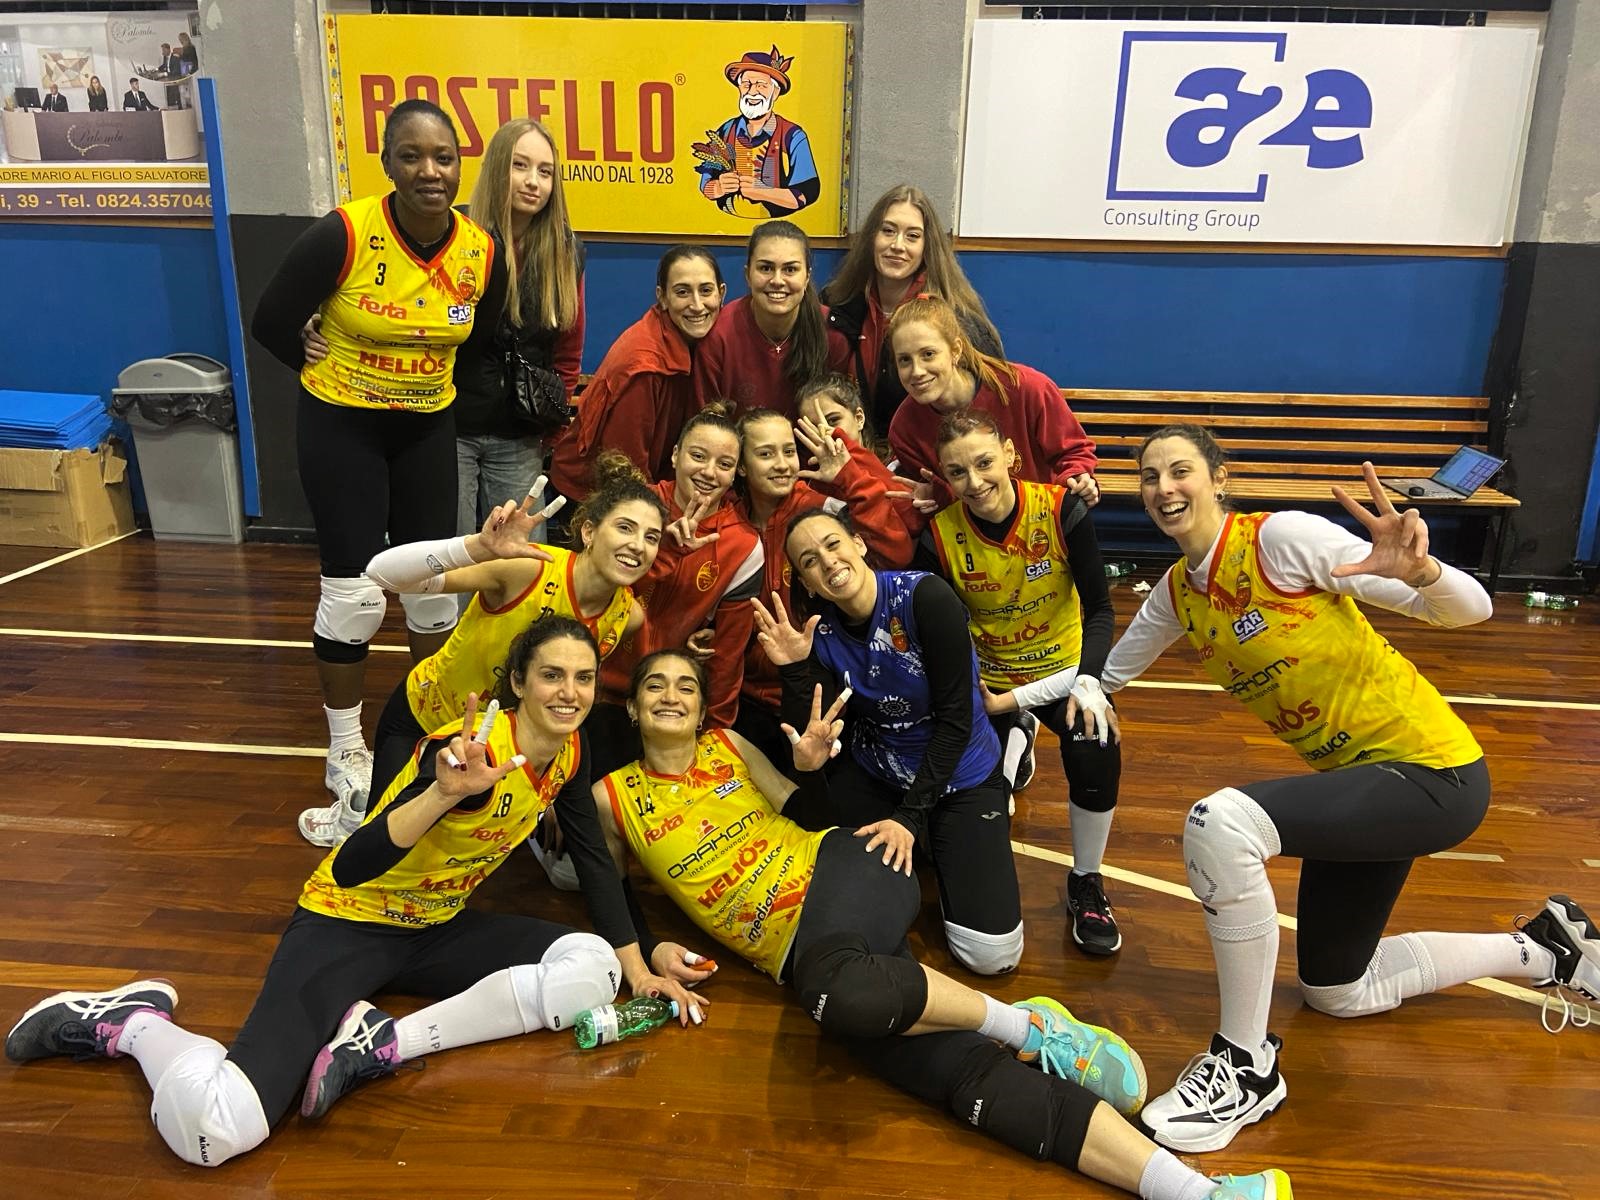 Vittoria per l’Accademia Volley ieri nell’incontro con la FLV Cerignola